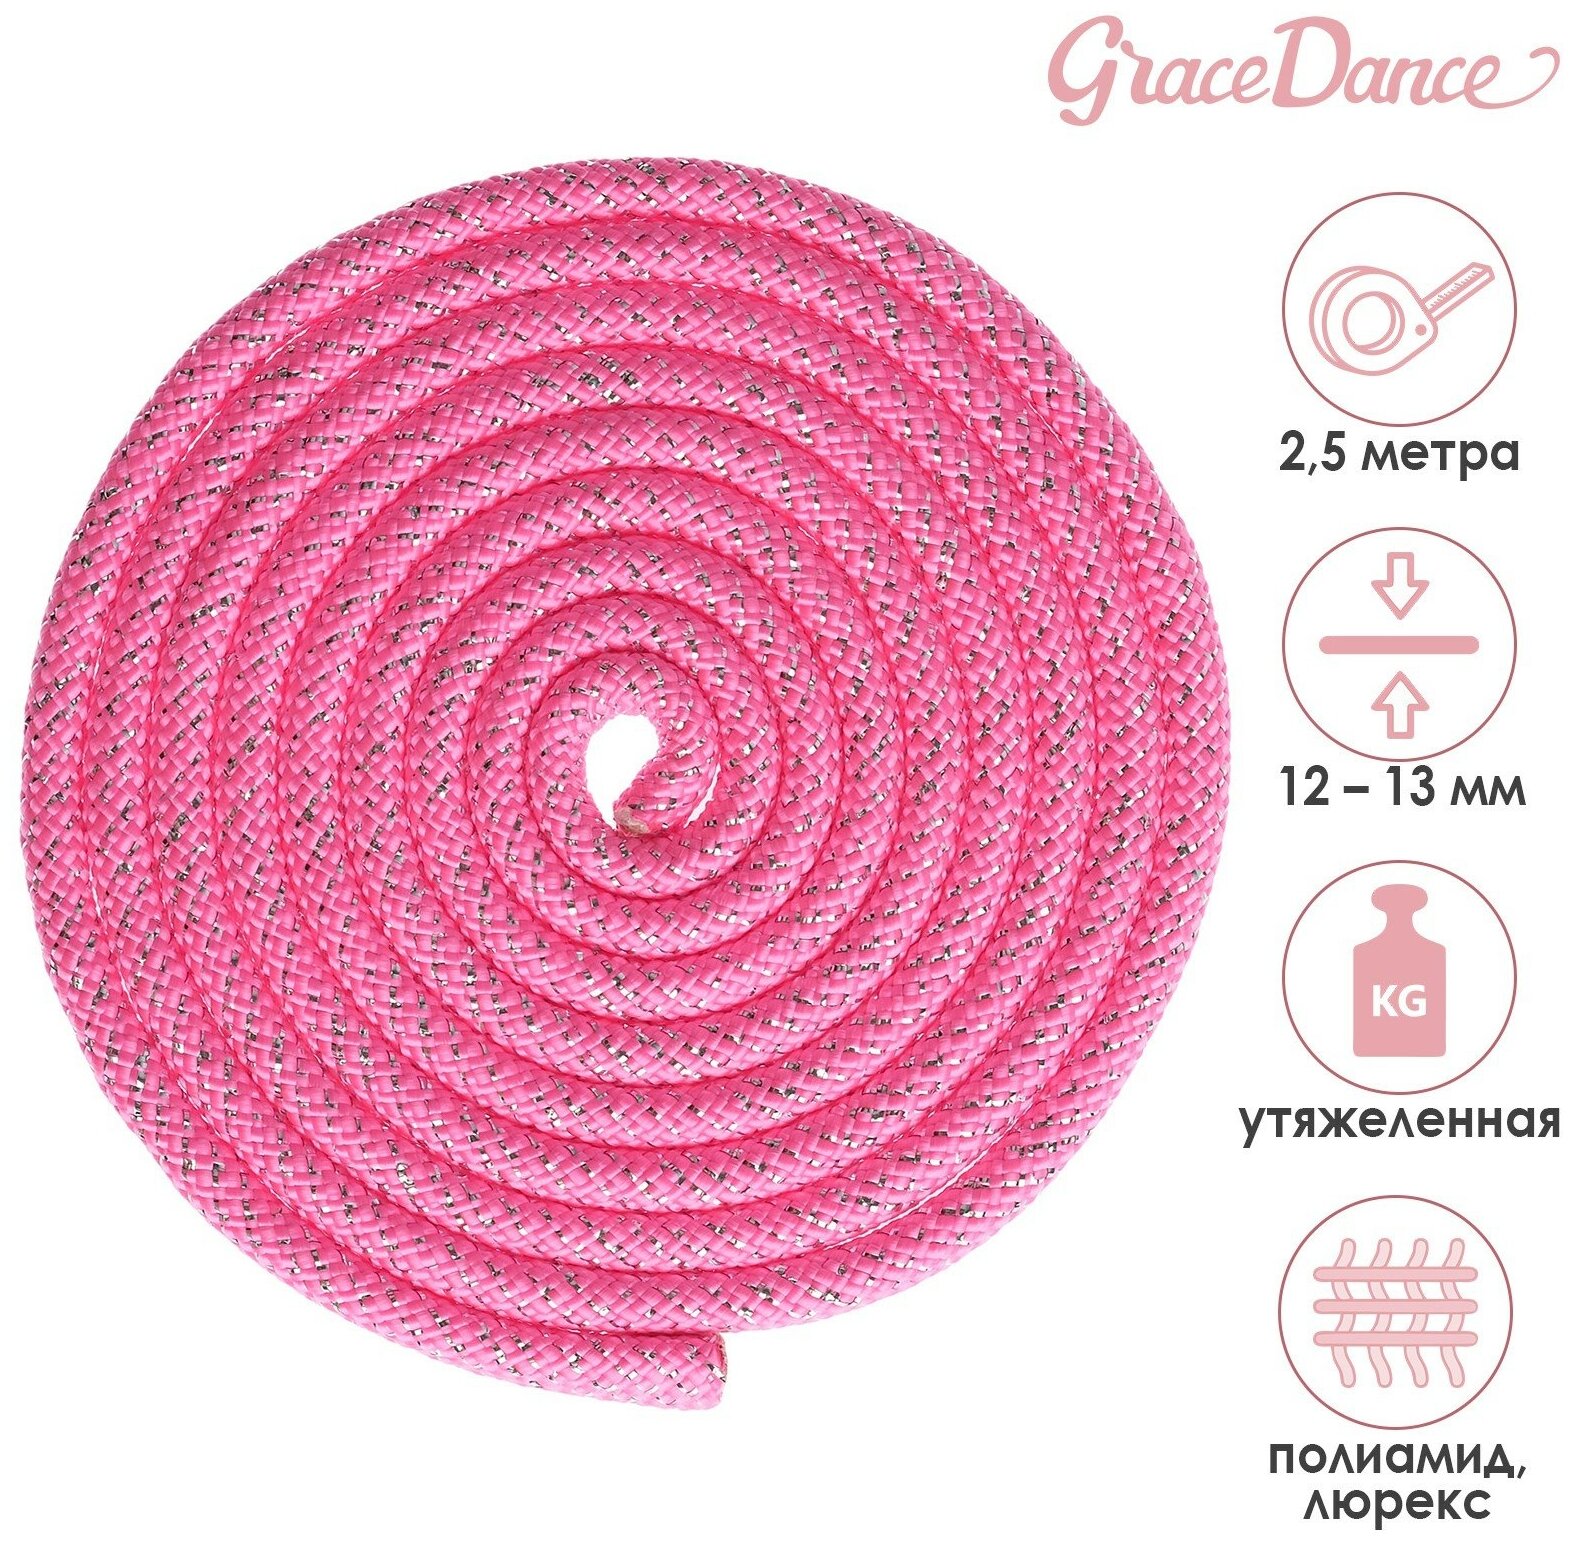 Скакалка Grace Dance, гимнастическая, утяжелённая, длина 2,5 м, толщина 12-13 мм, цвет неон розовый, серебро, люрекс